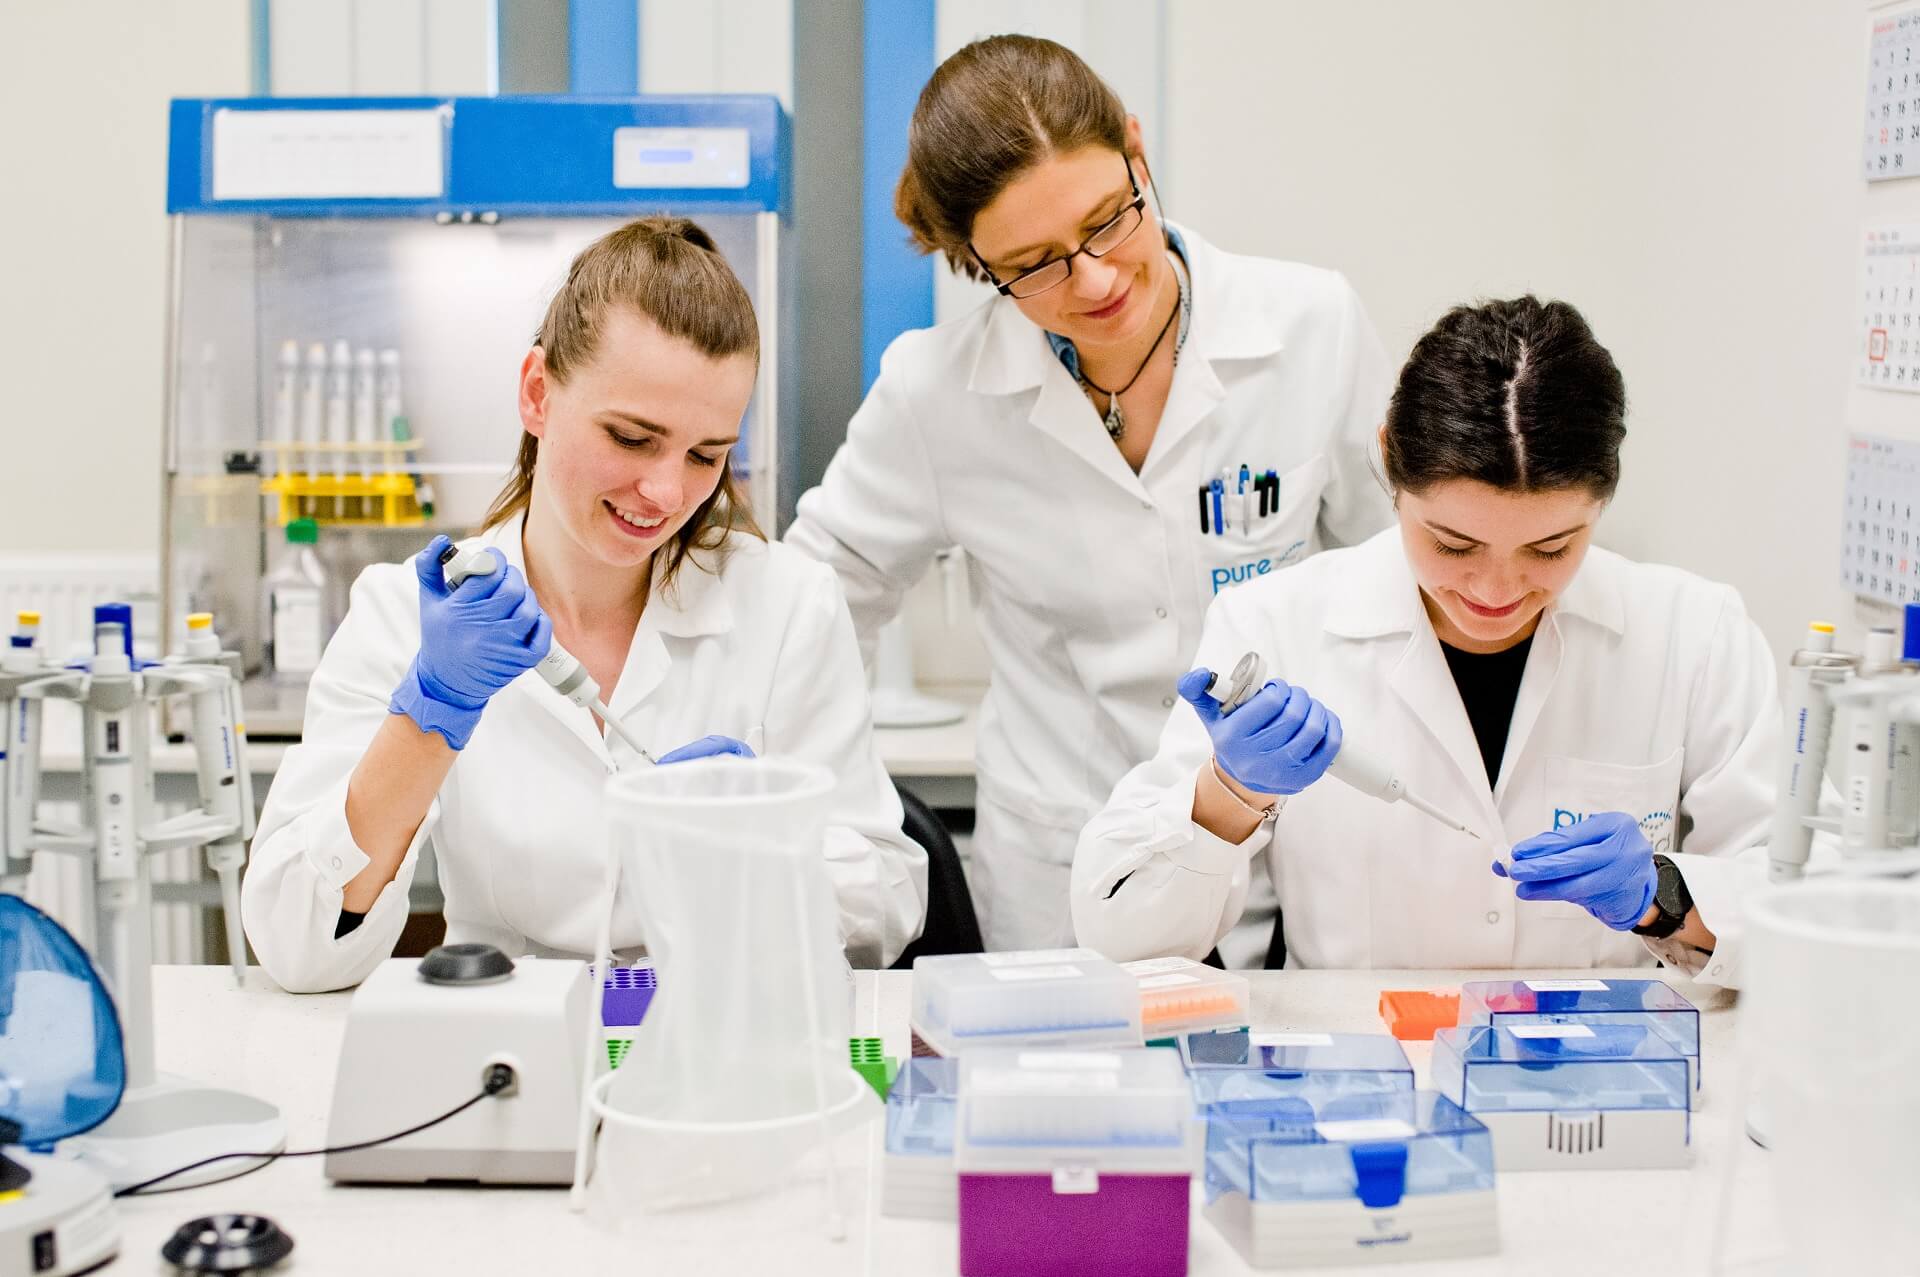 Trzy uśmiechnięte kobiety w białych kitlach, pracujące w laboratorium